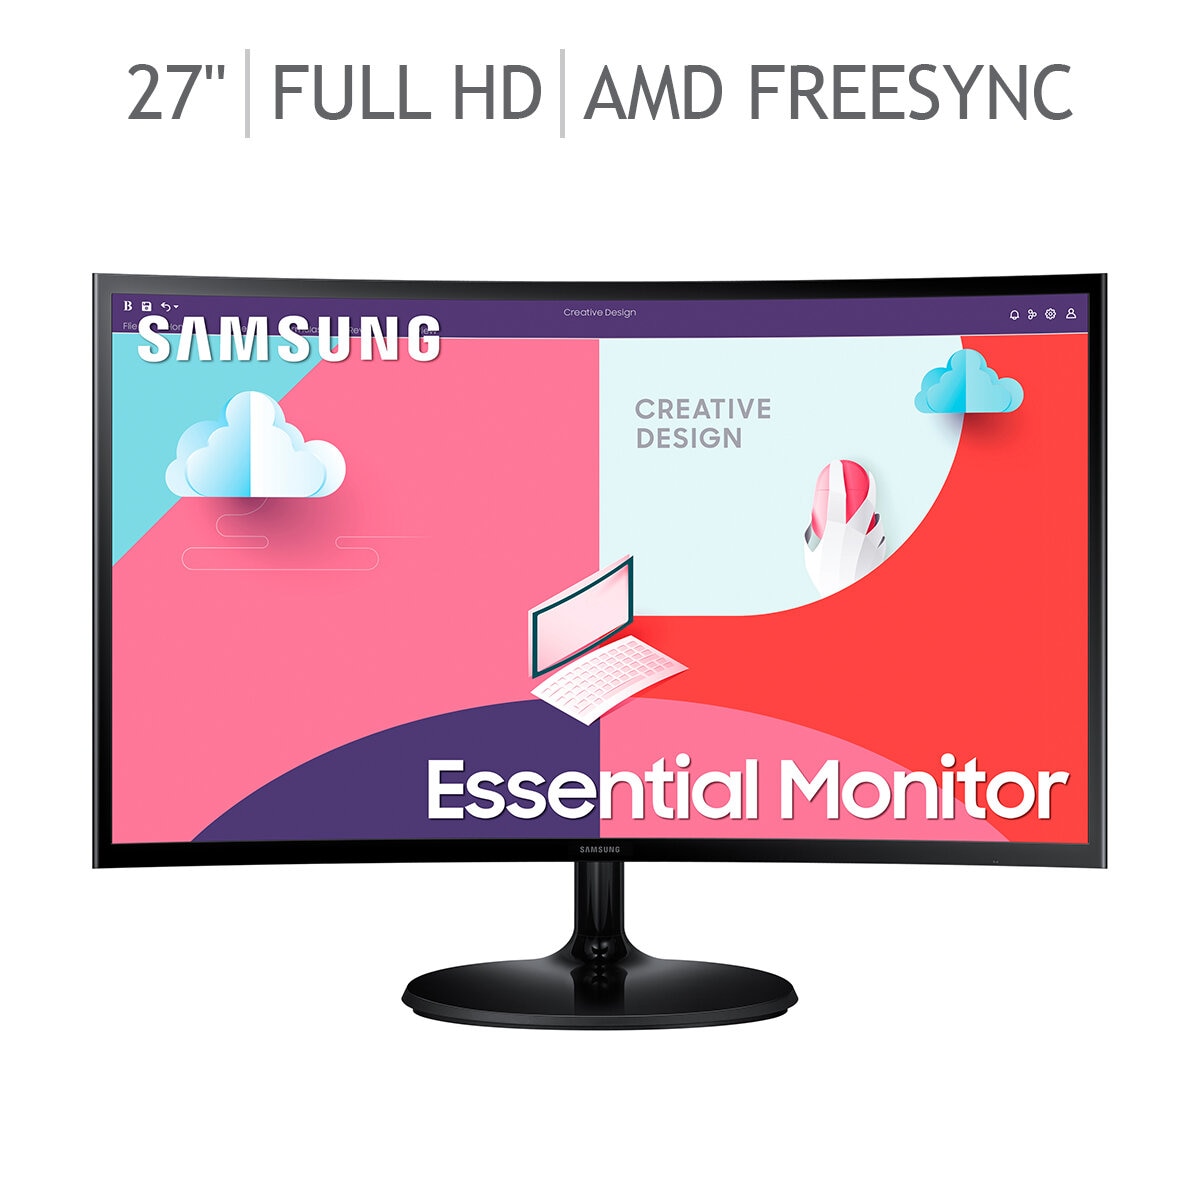  HP Monitor FHD de 27 pulgadas con tecnología AMD